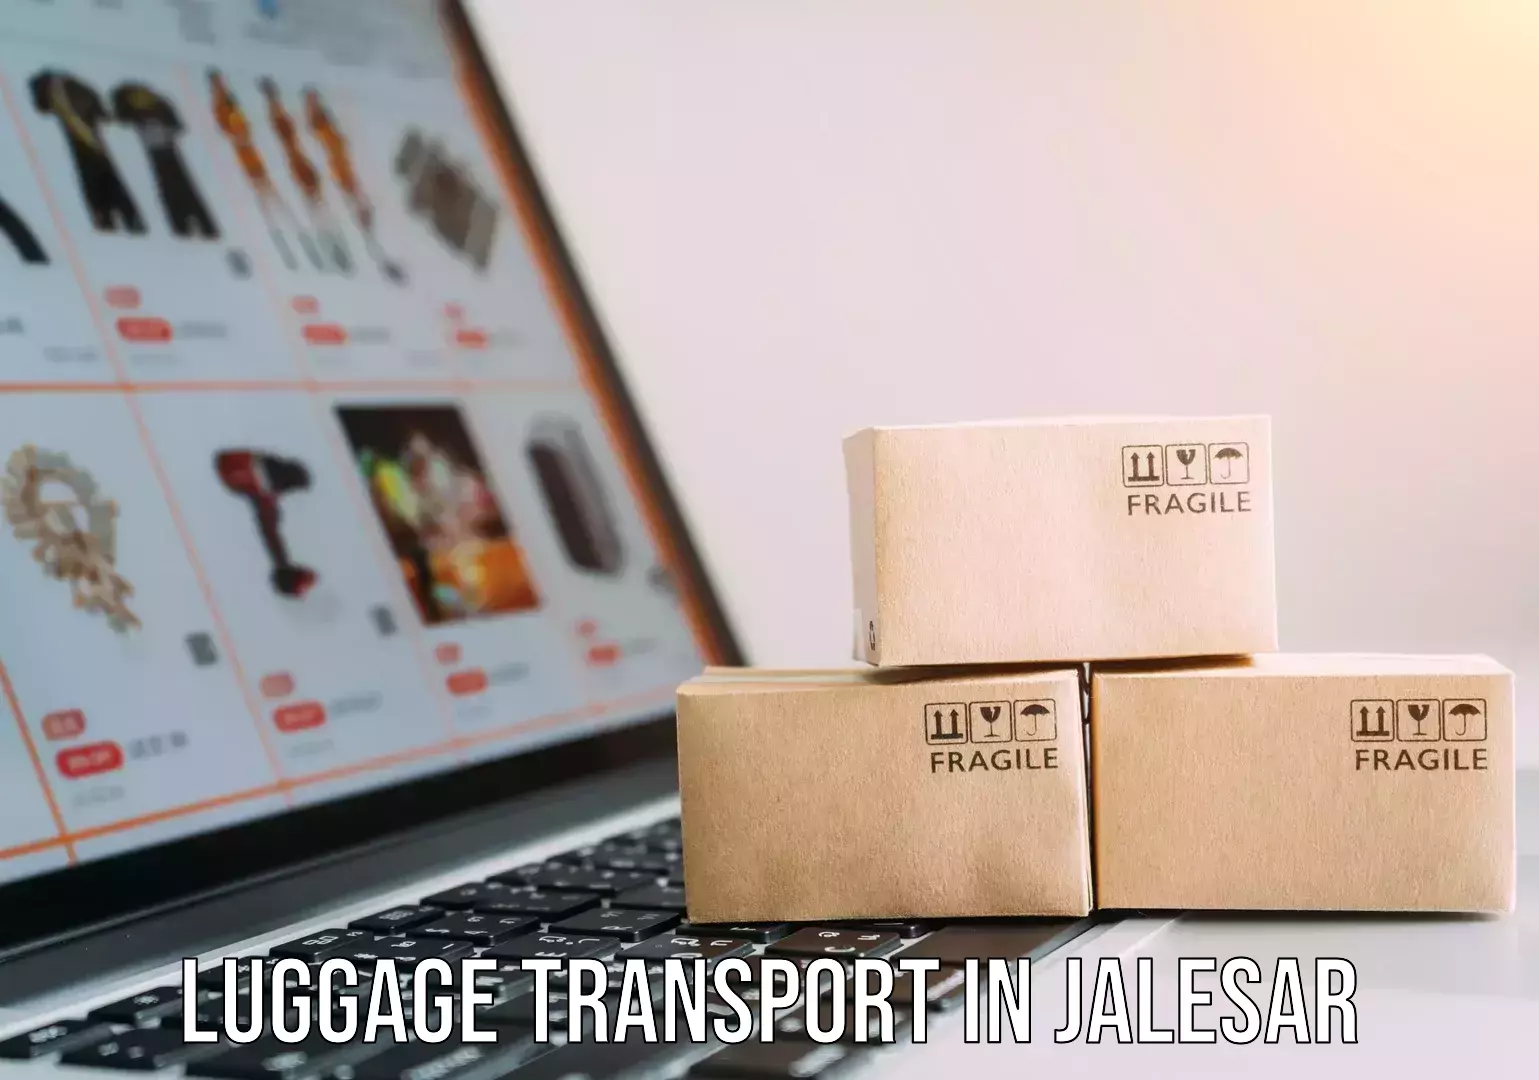 Luggage transit service in Jalesar